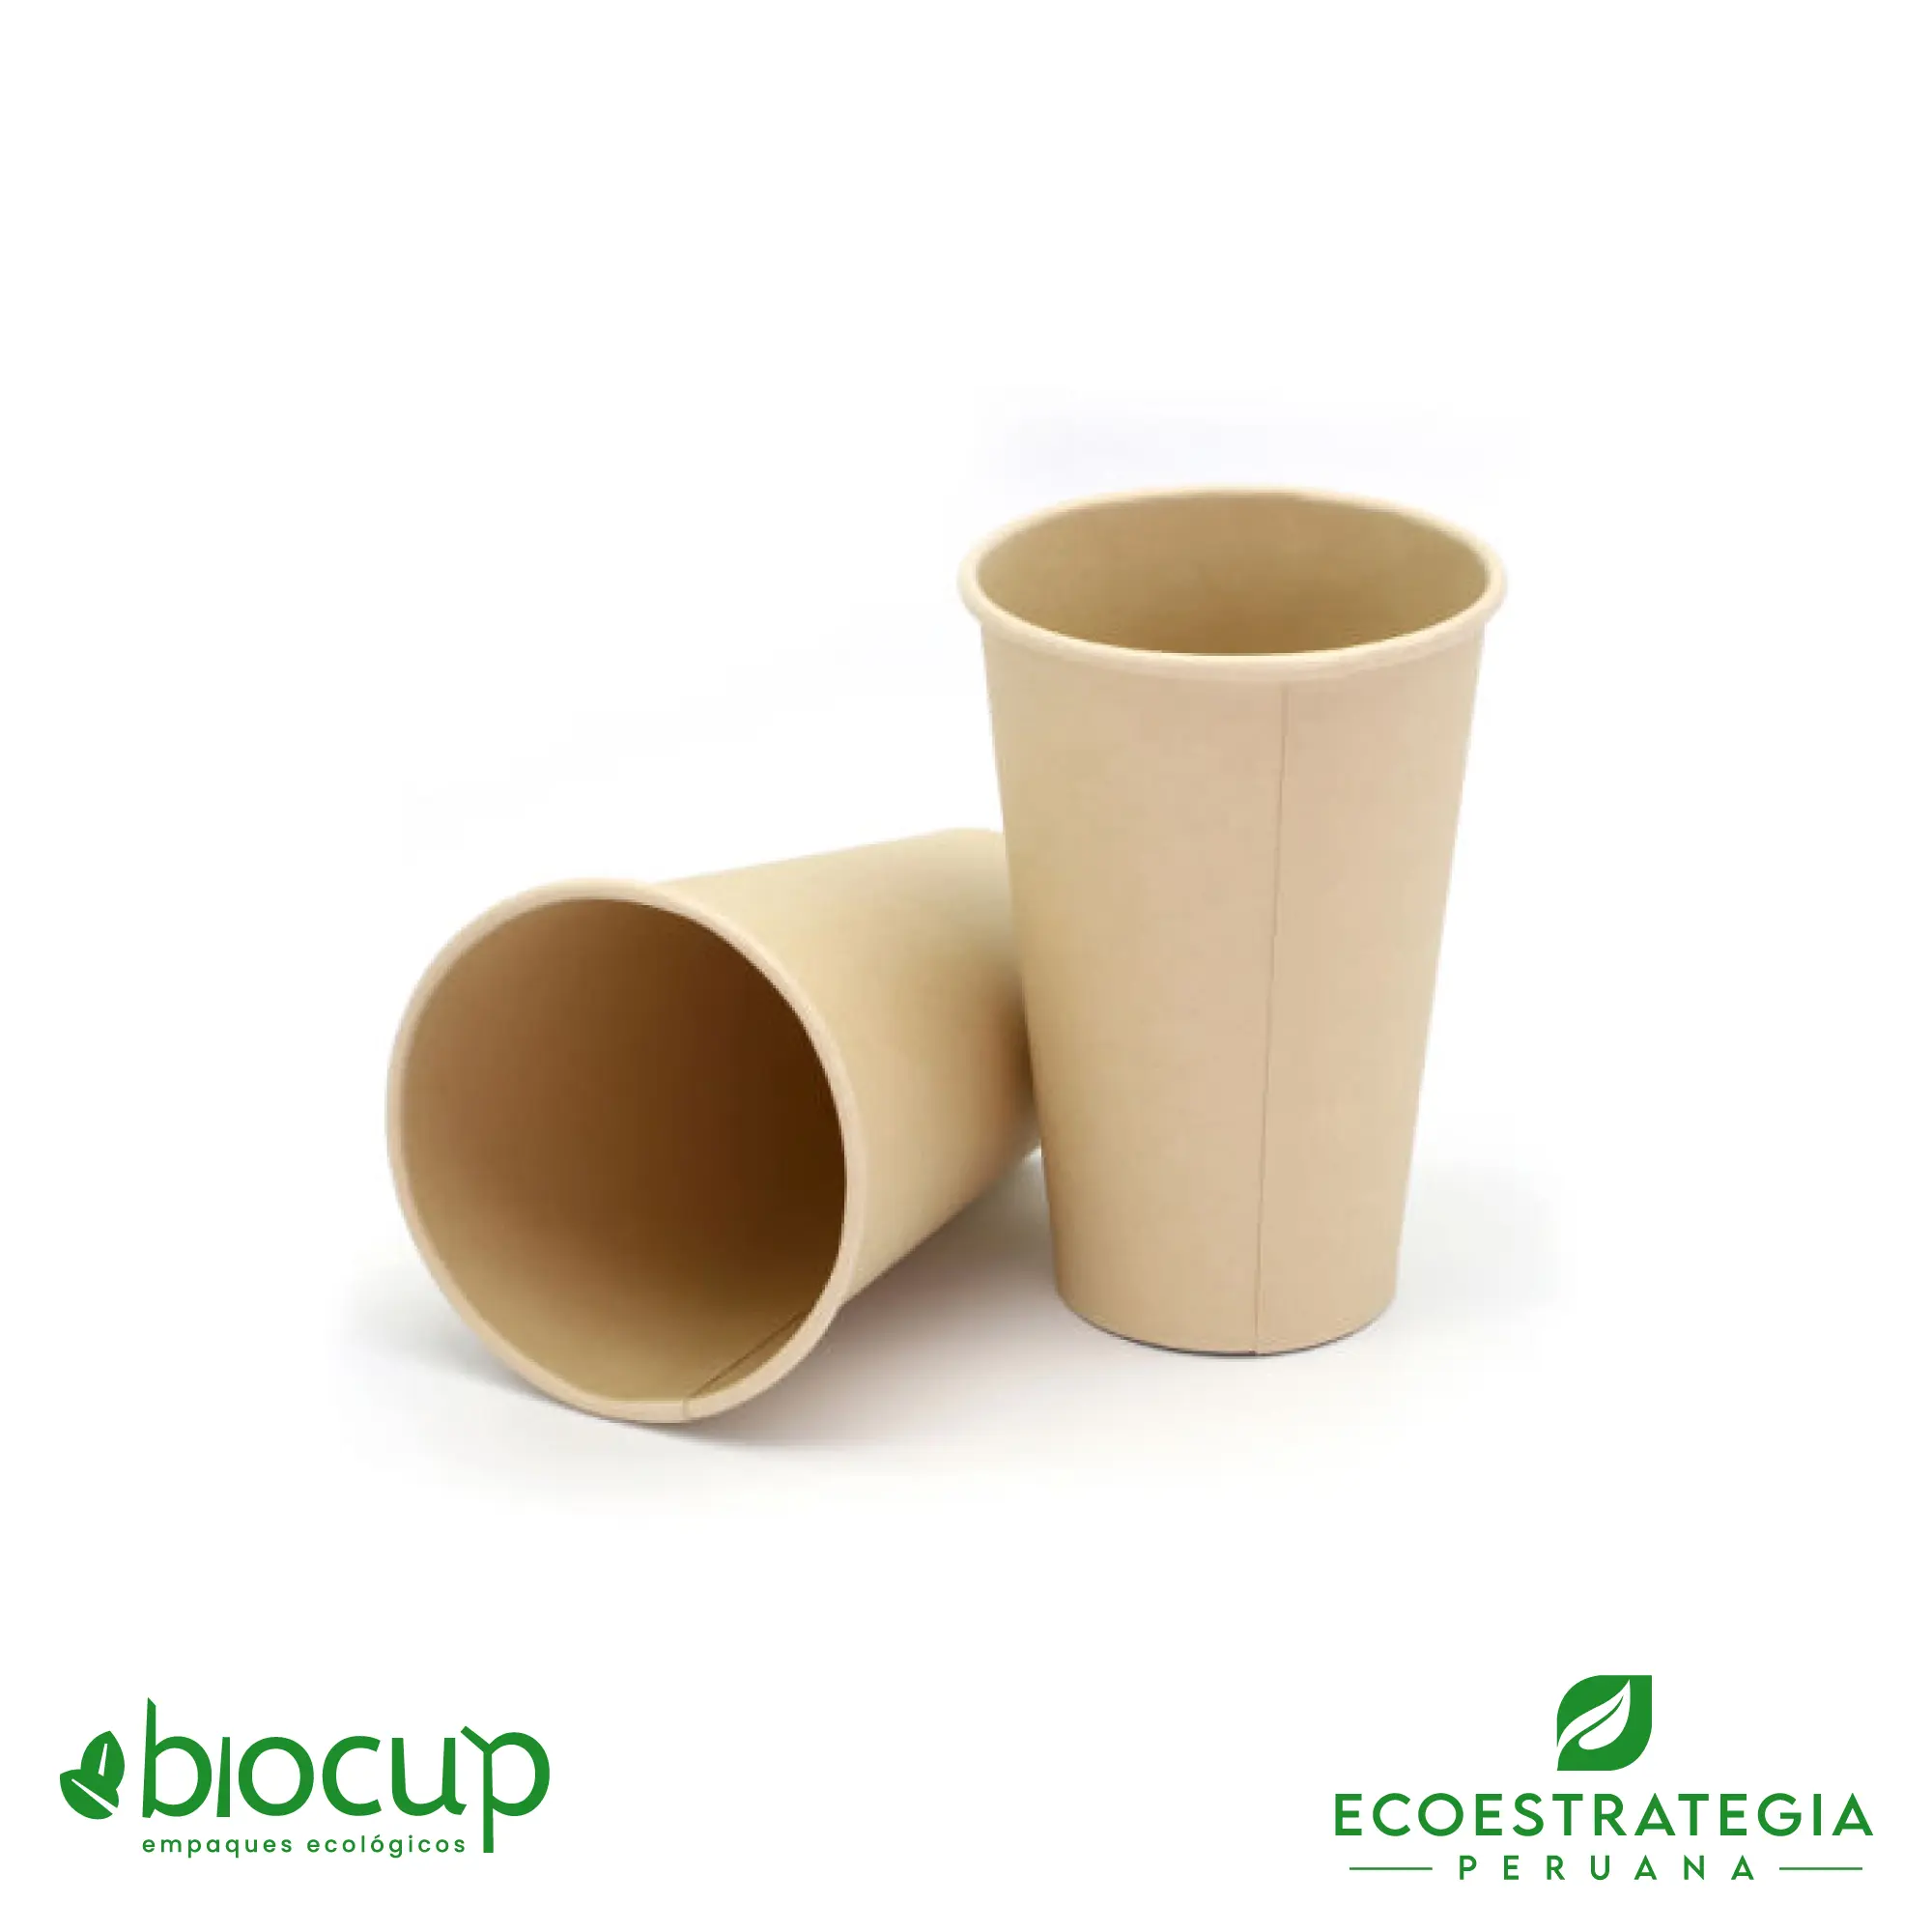 Este vaso de 16 oz es un producto de materiales biodegradables y compostables, hecho a base de fibra de bambú. Cotiza tus vasos para bebidas frías o calientes